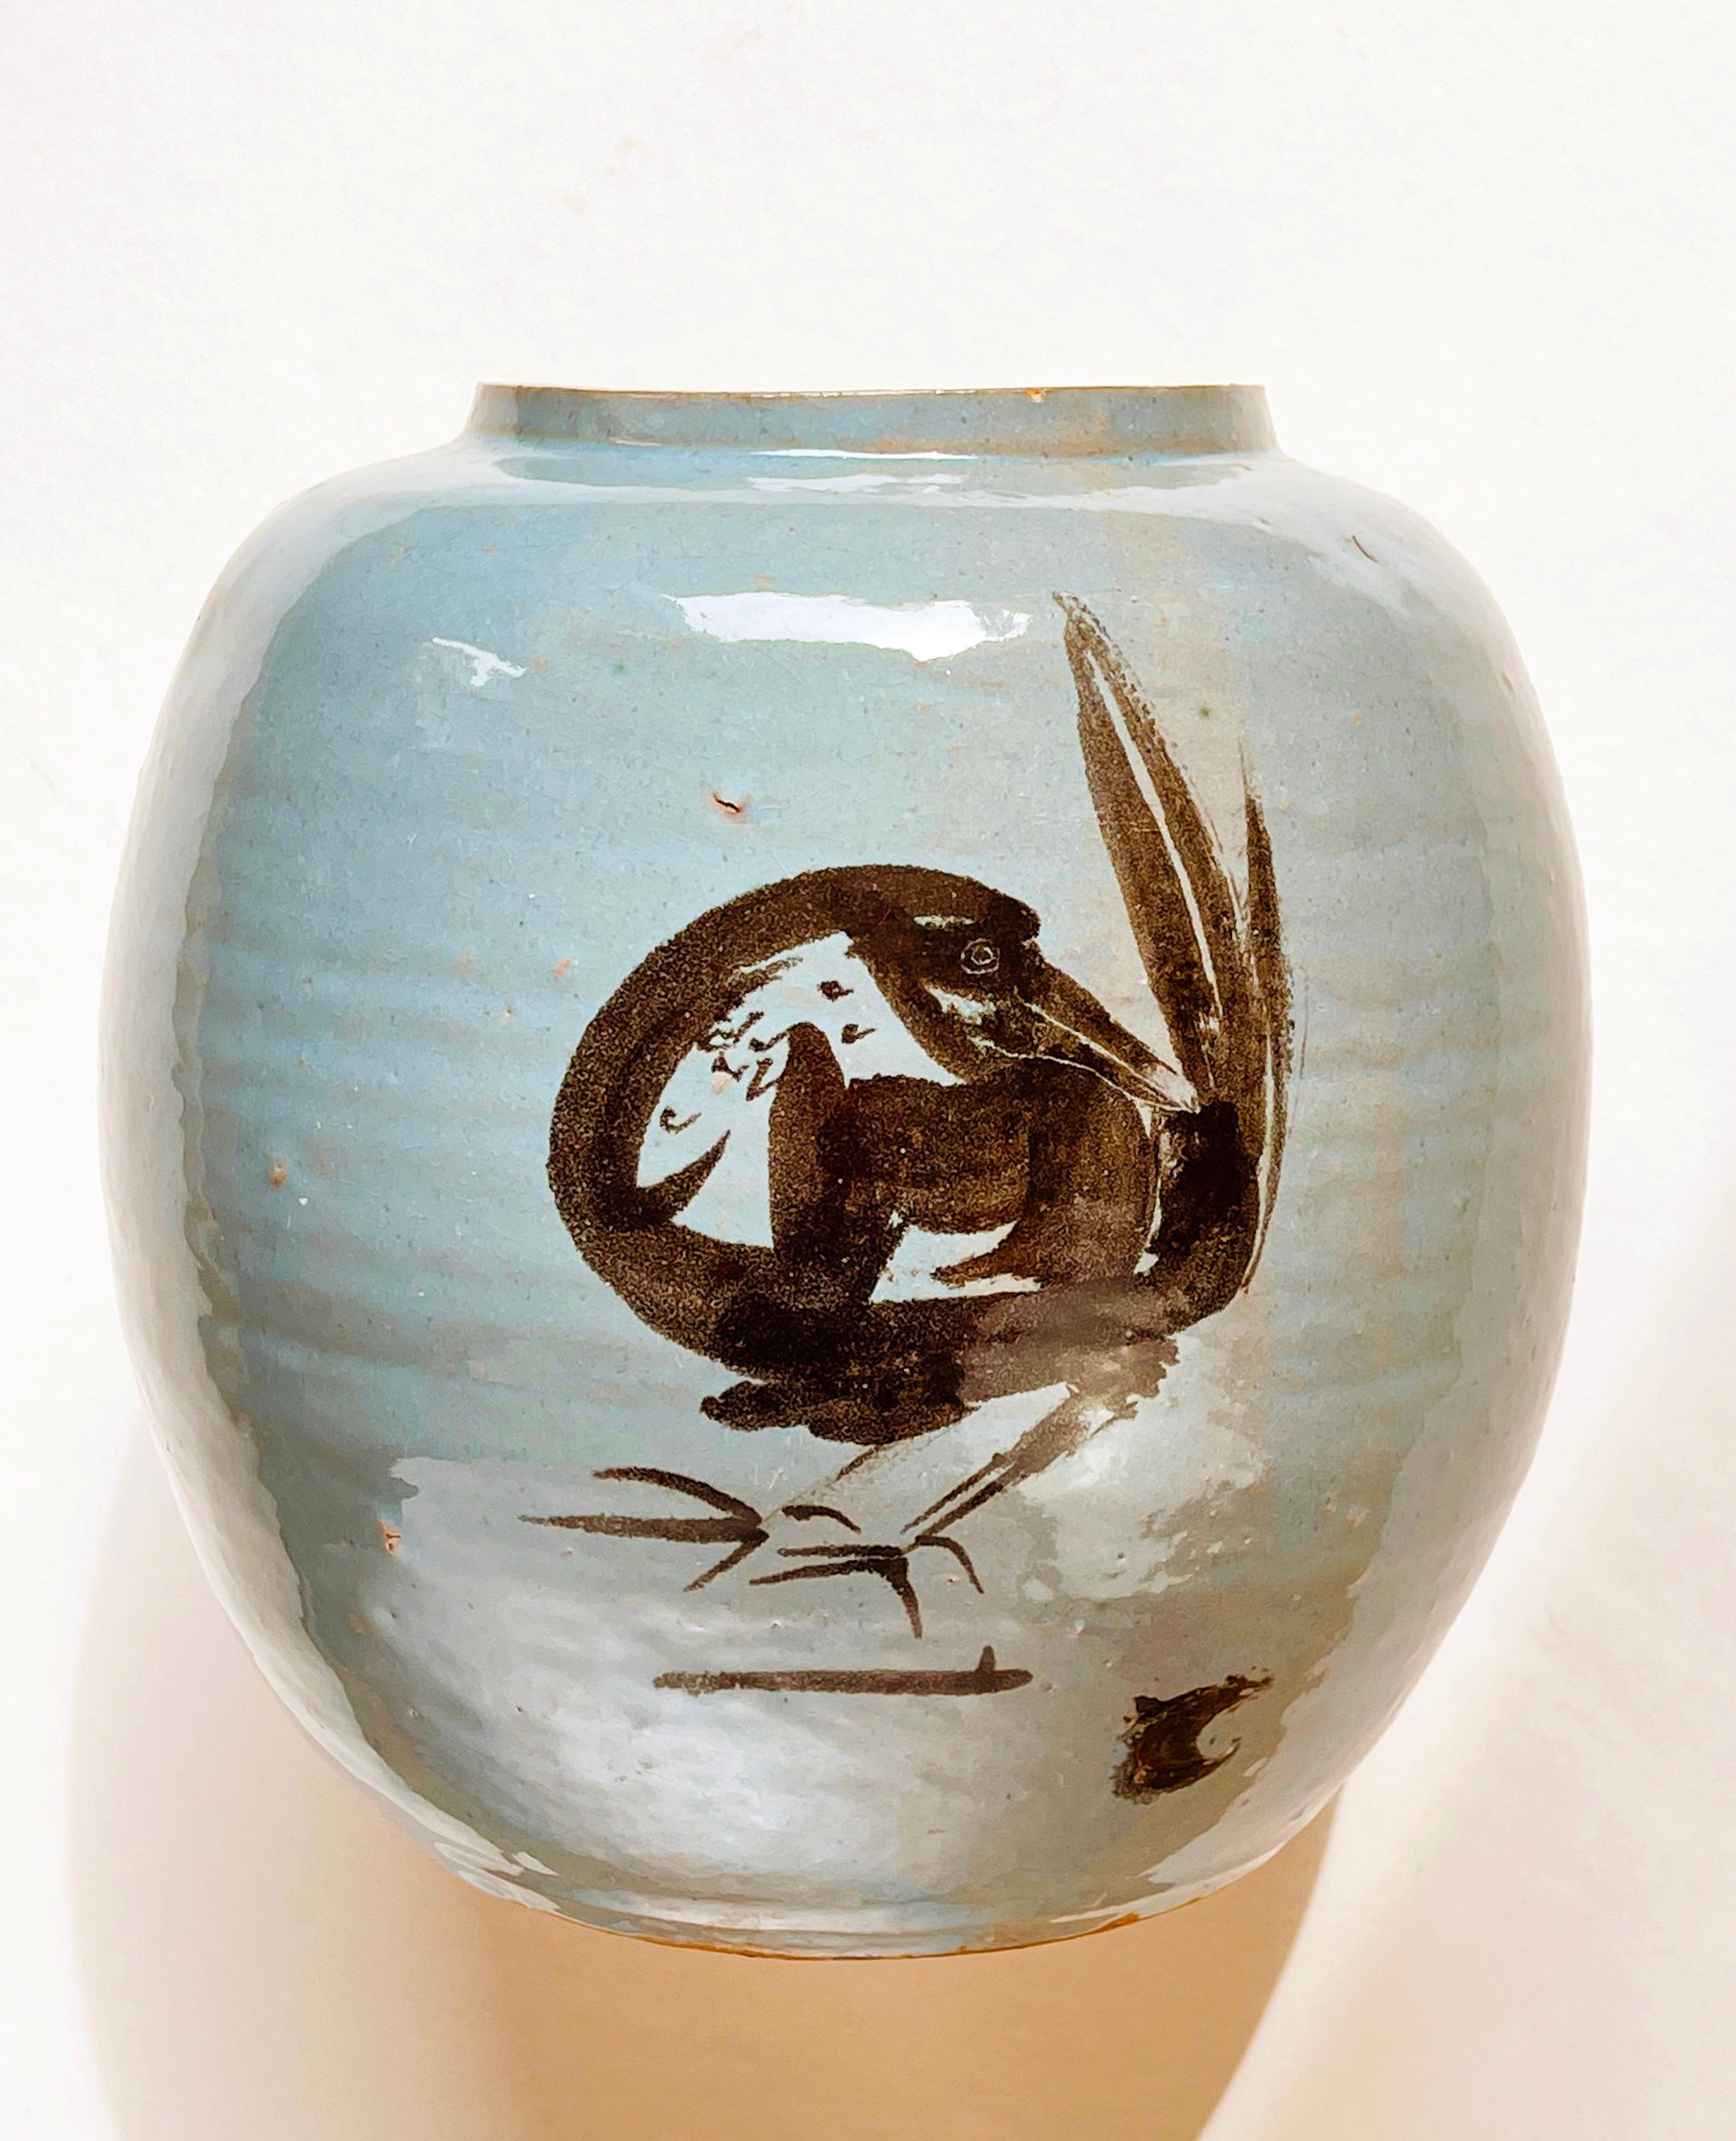 Magnifique, probablement originaire du Japon : grand vase rond en céramique avec une glaçure bleu coquille d'œuf à turquoise.
Le style général s'inspire du merveilleux style de peinture au pinceau de la période Edo (1603 à 1868), où tout est exprimé